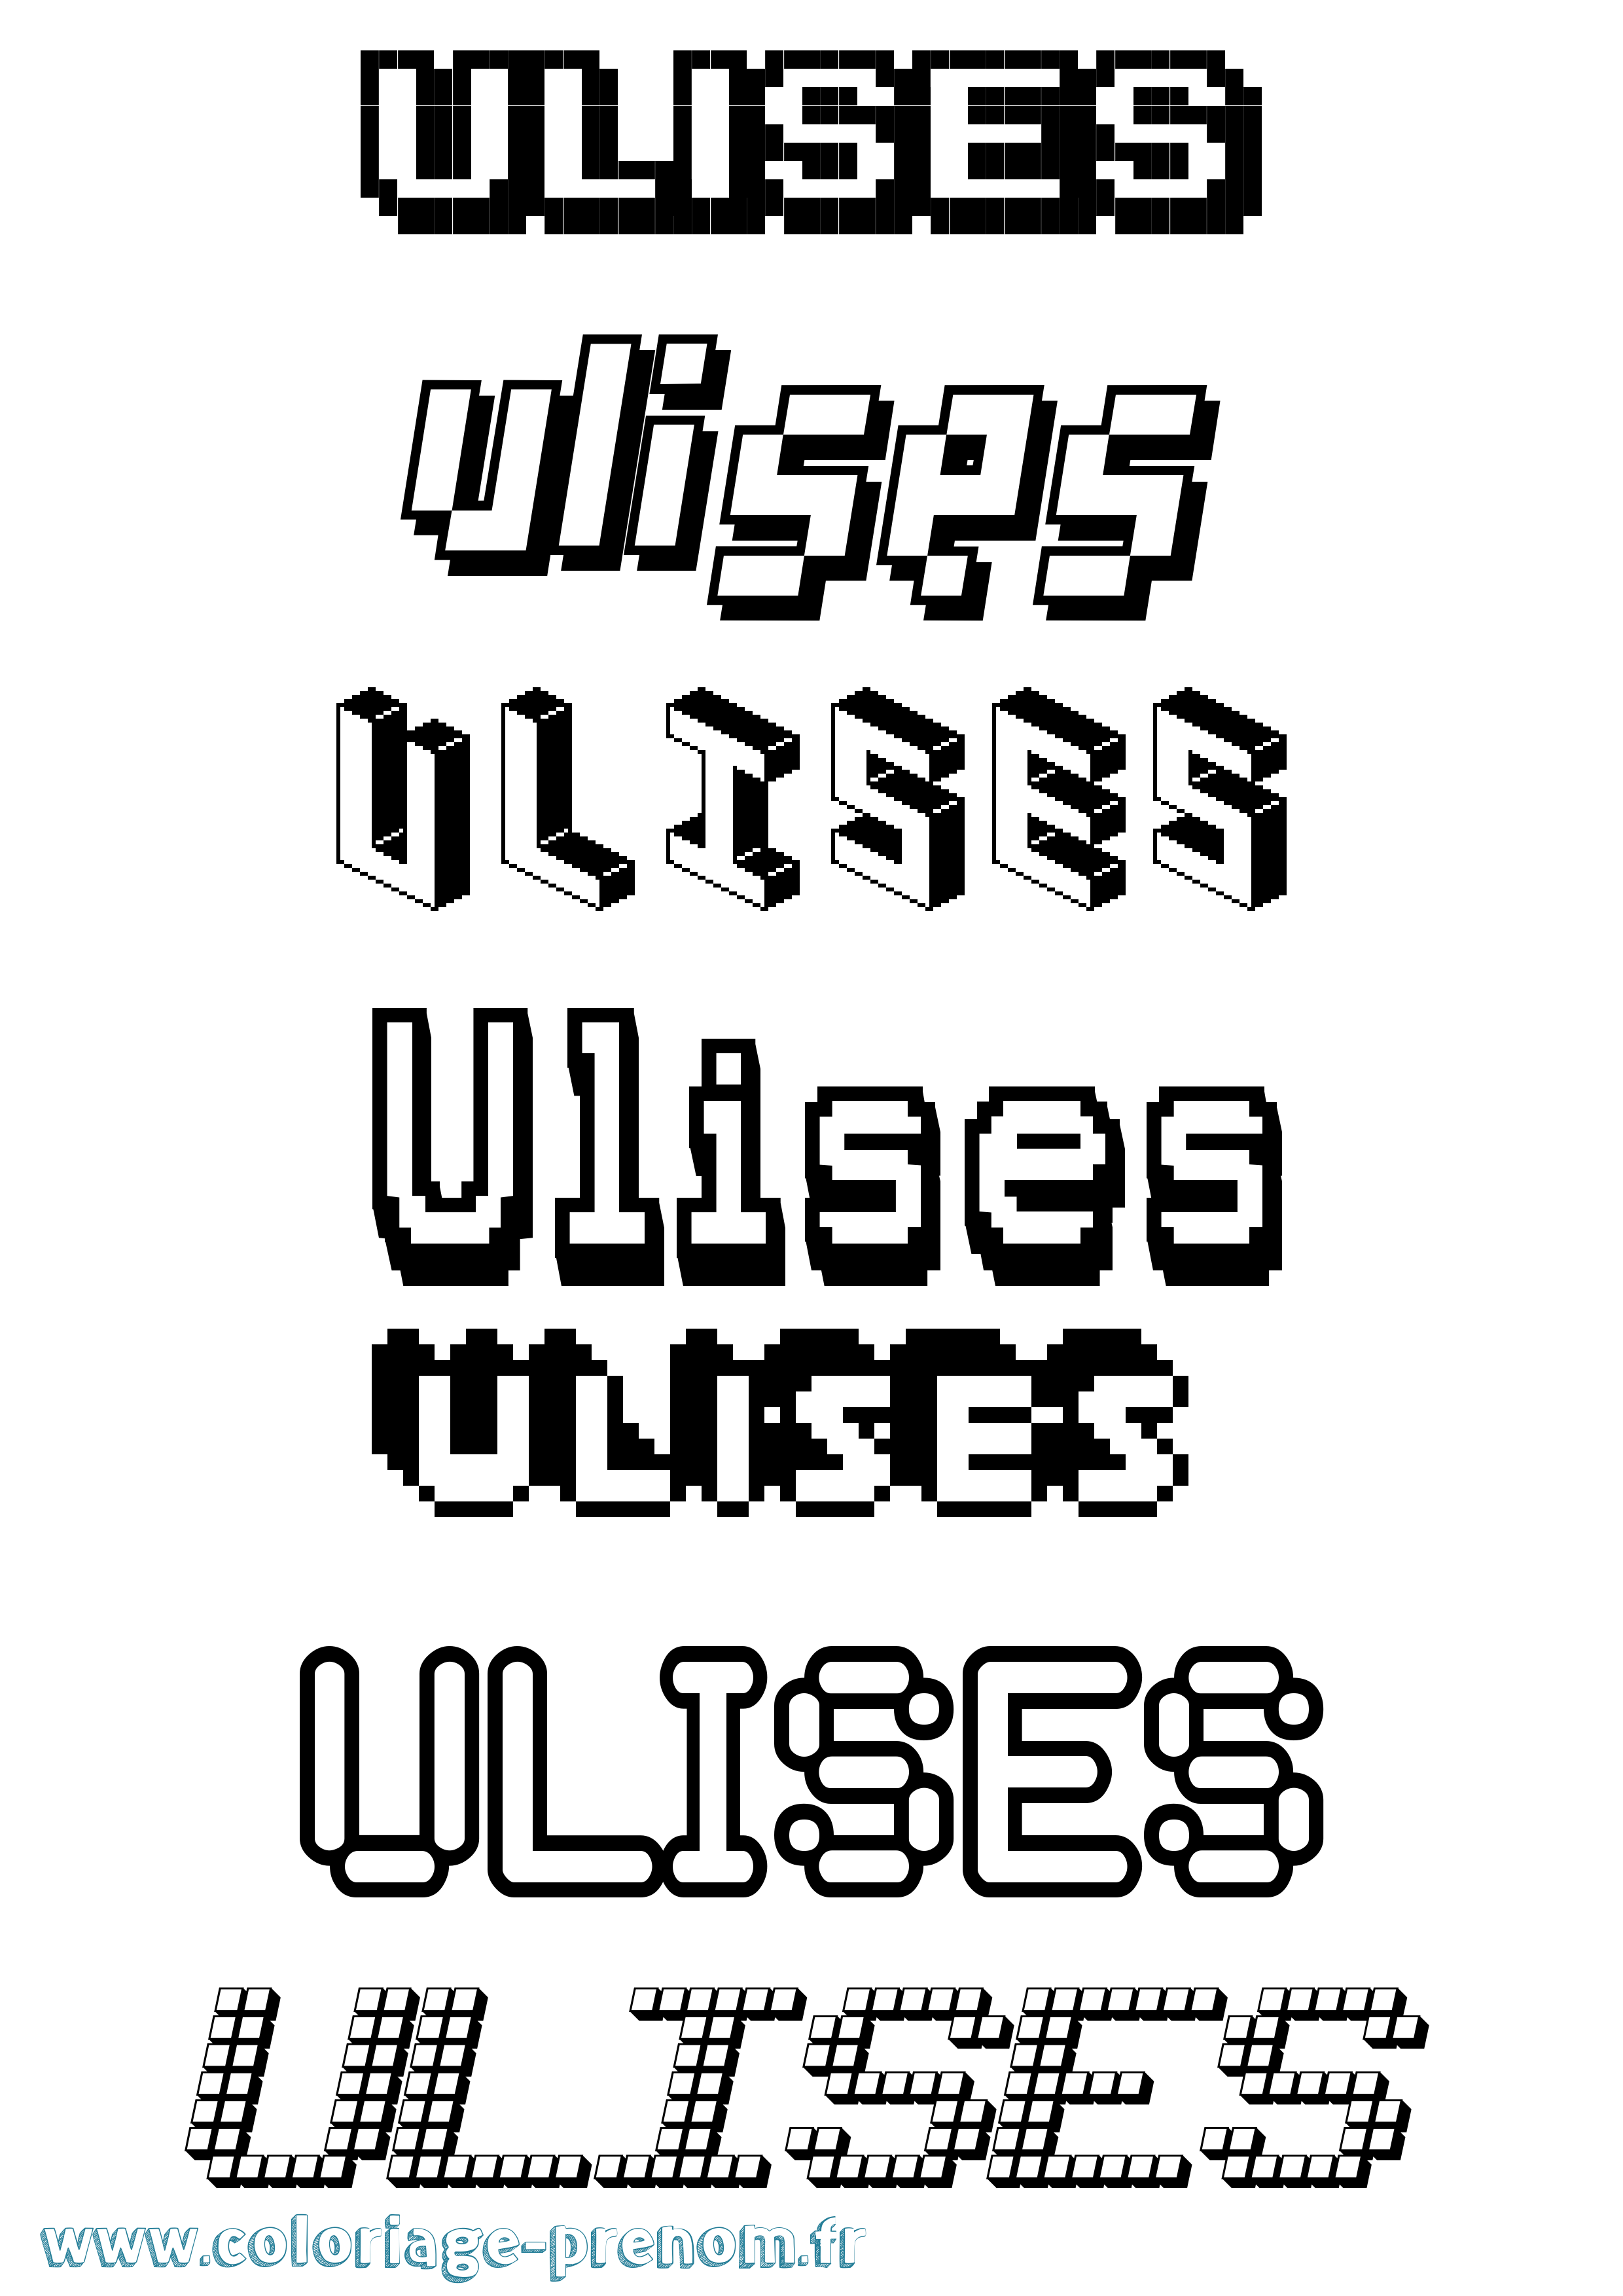 Coloriage prénom Ulises Pixel